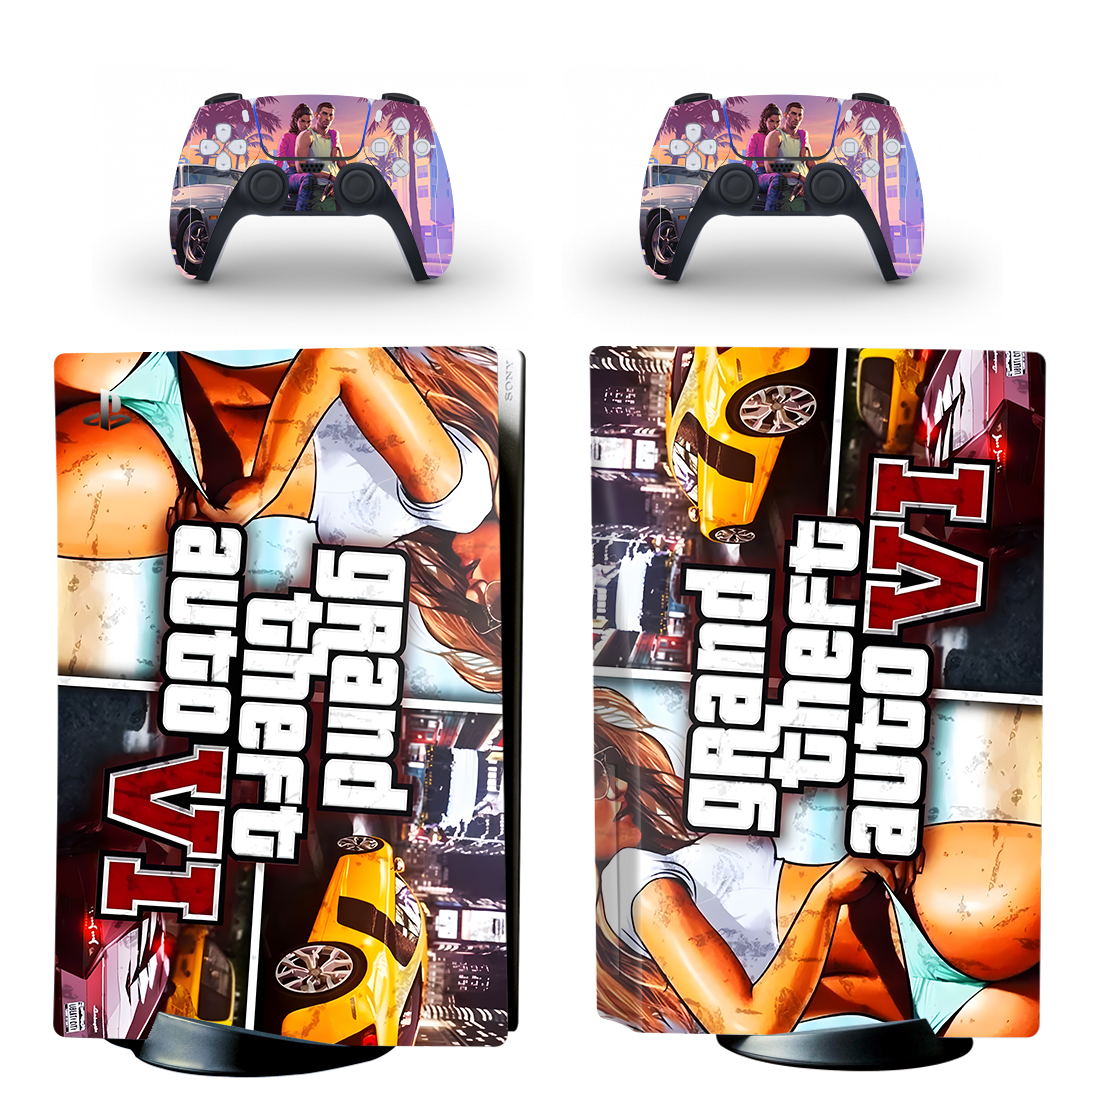 Grand Theft Auto VI Console Skin Sticker And Controllers Design 2